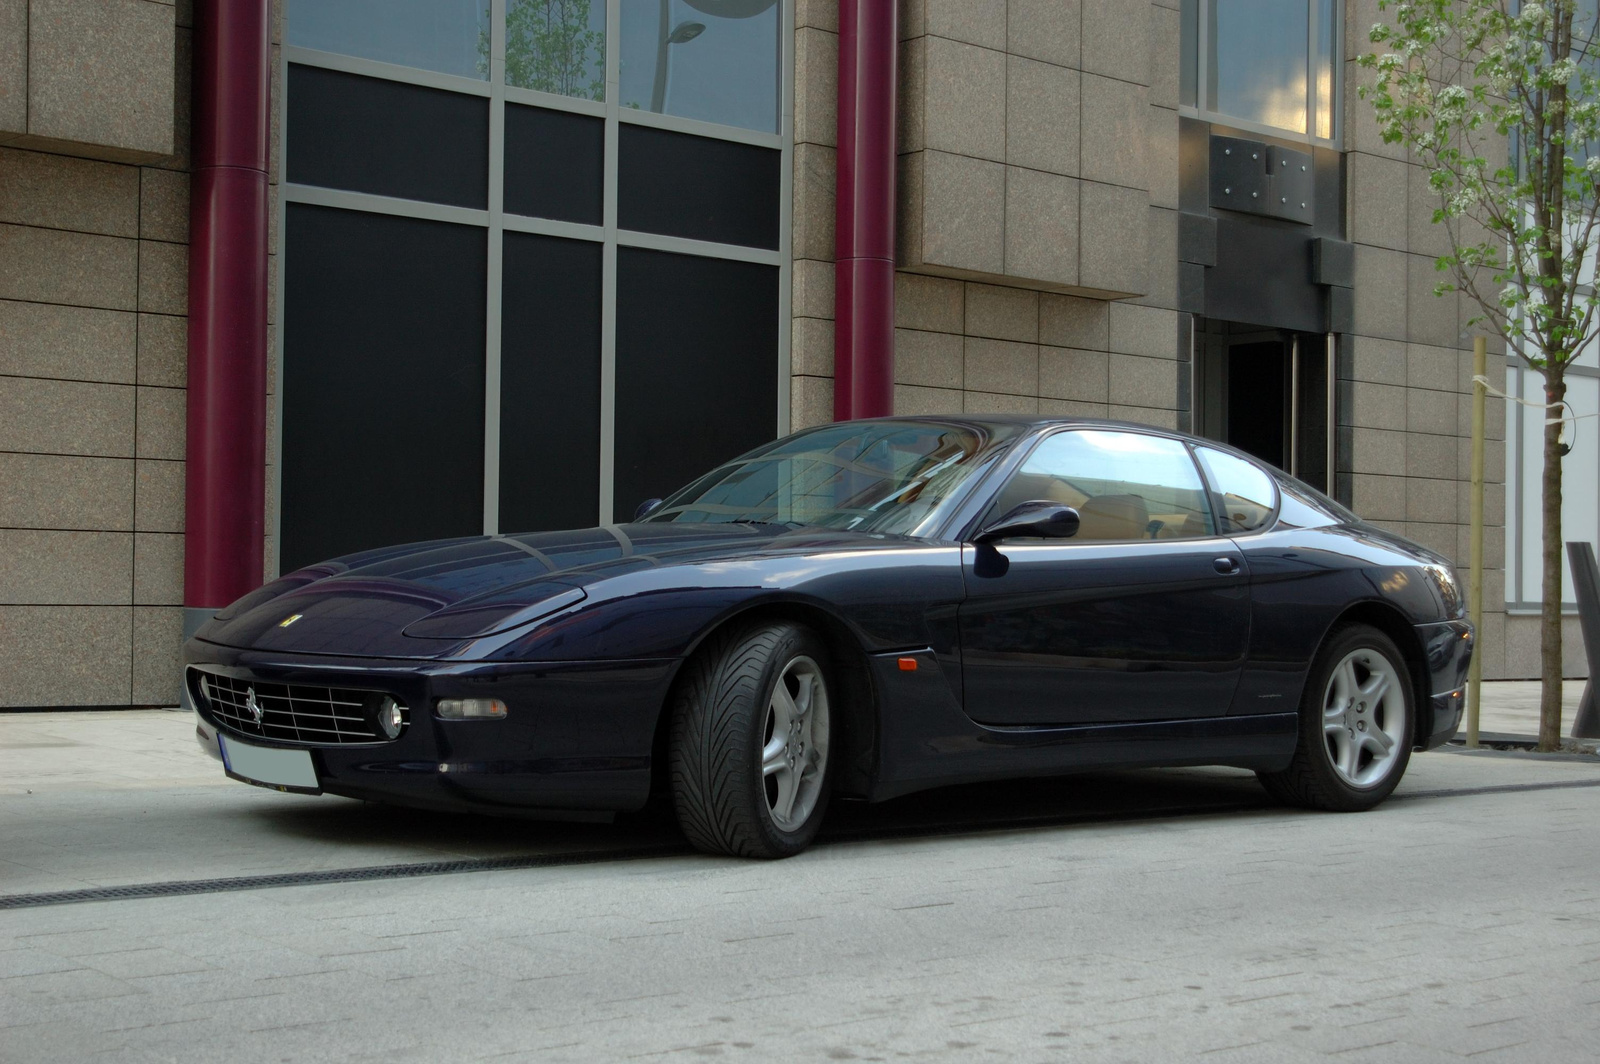 Ferrari 456